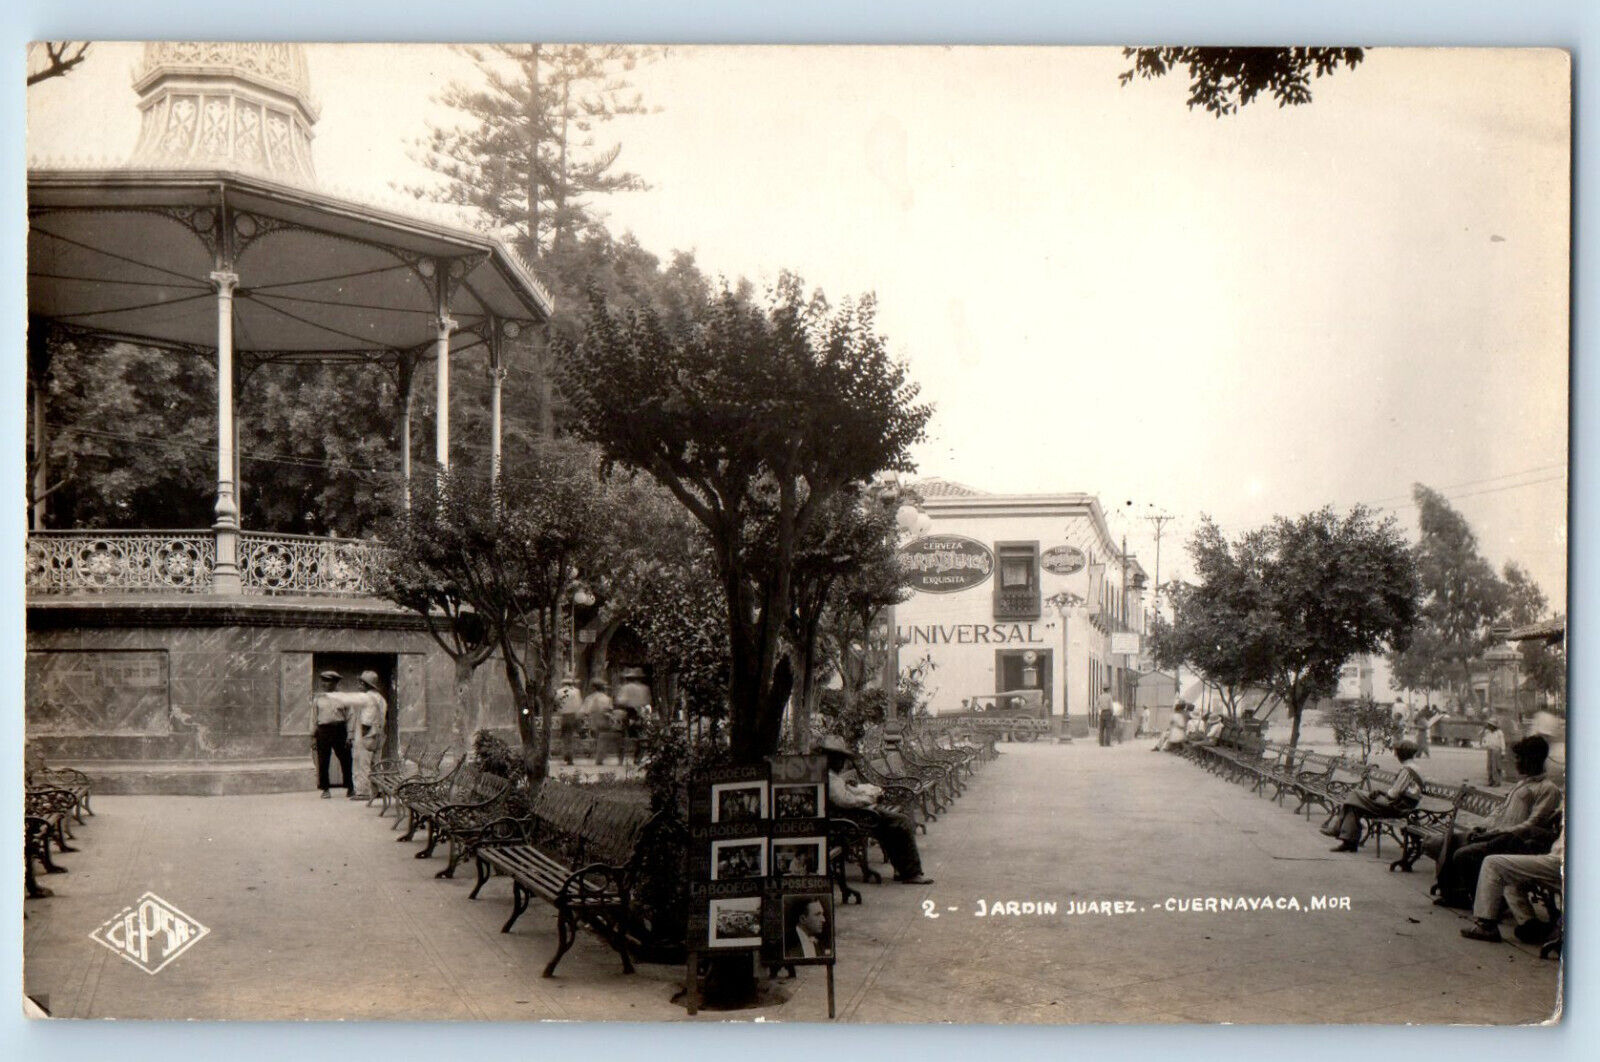 Cuernavaca Morelos Mexico Postcard Juarez Garden c1930's Vintage RPPC Photo